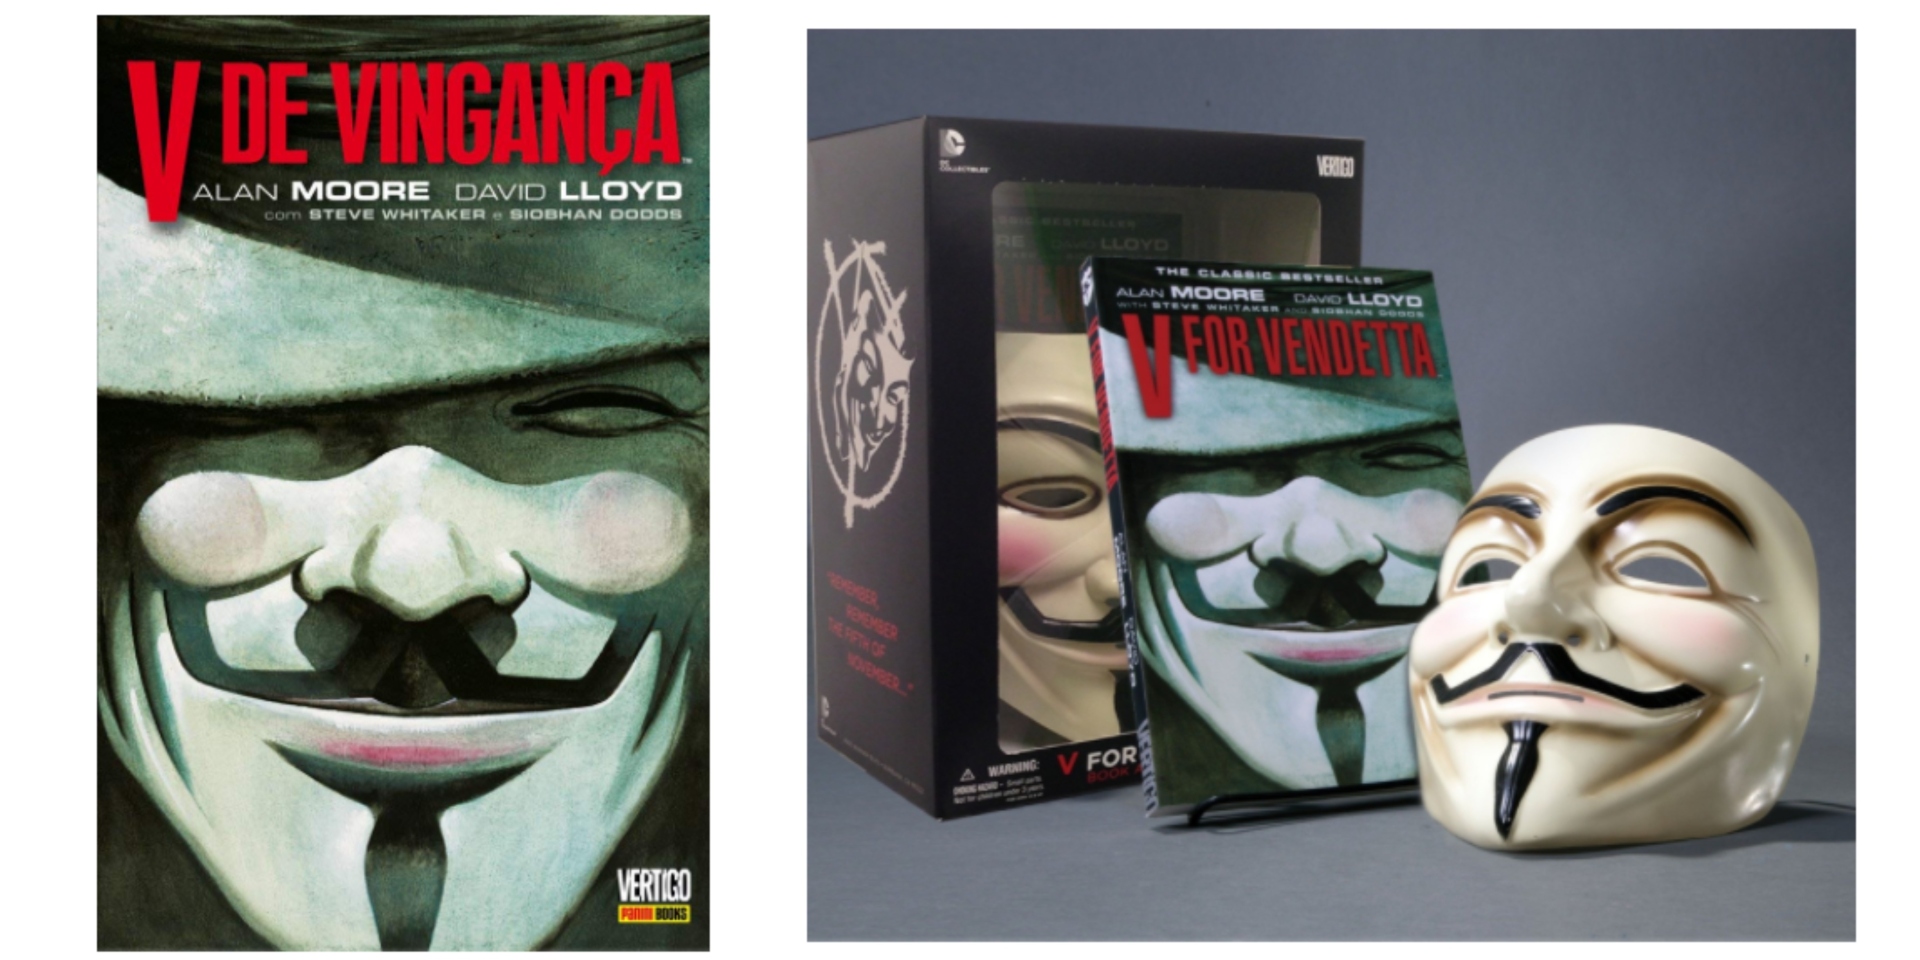 DVD V De Vingança Natalie Portman Hugo Weaving Original V For Vendetta  James McTeigue